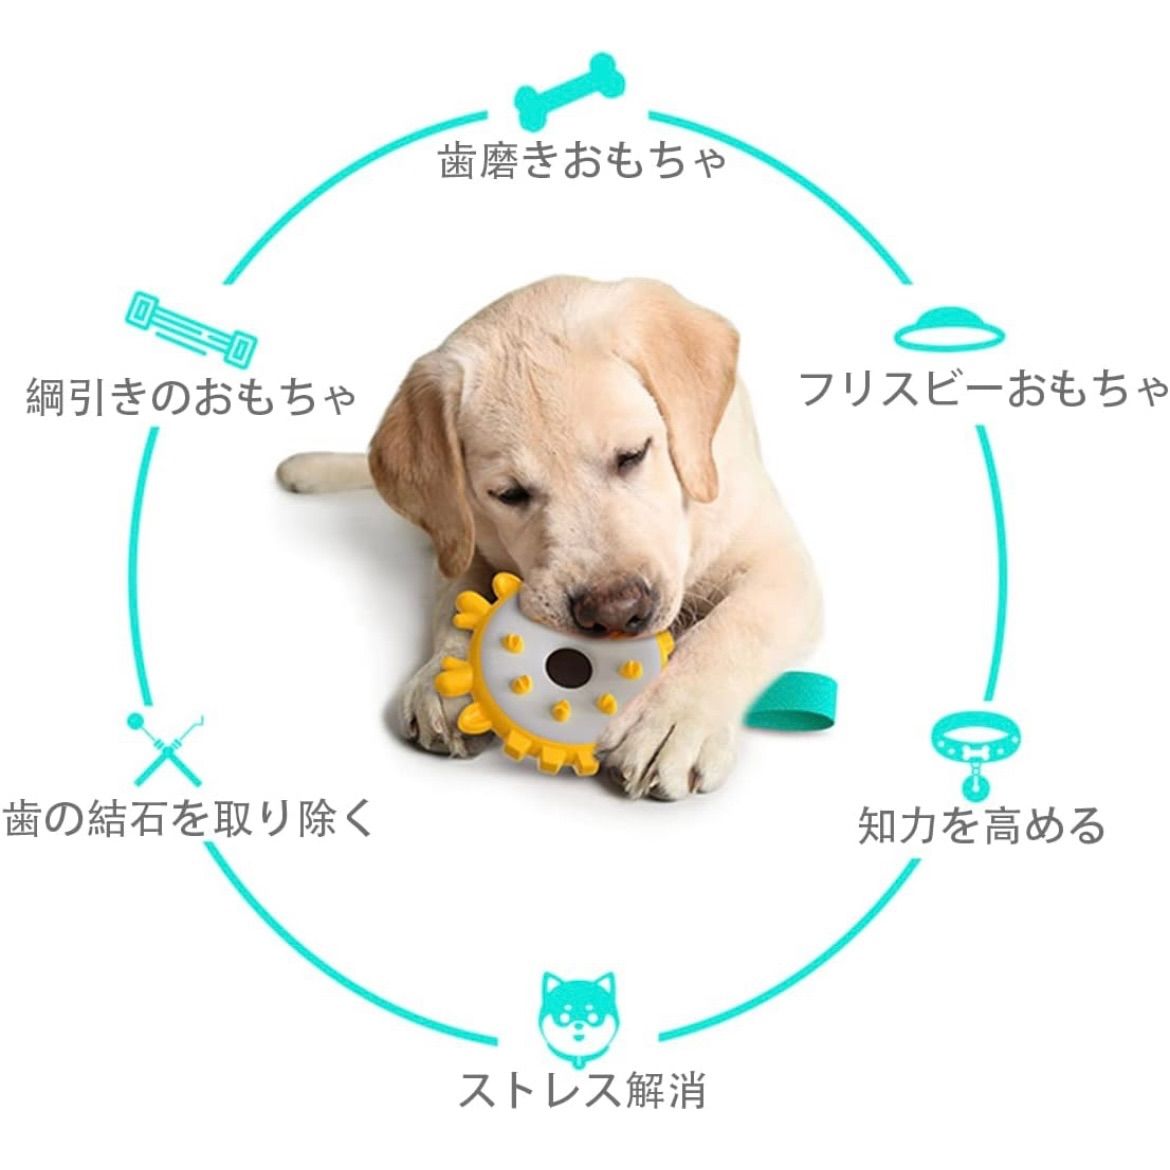 フリスビー 柔らかい 歯を保護する 犬 おもちゃ 投げるおもちゃトレーニング ペッと玩具 シリコン製 投げるおもちゃ ペット フリスビー キャンプ 円盤